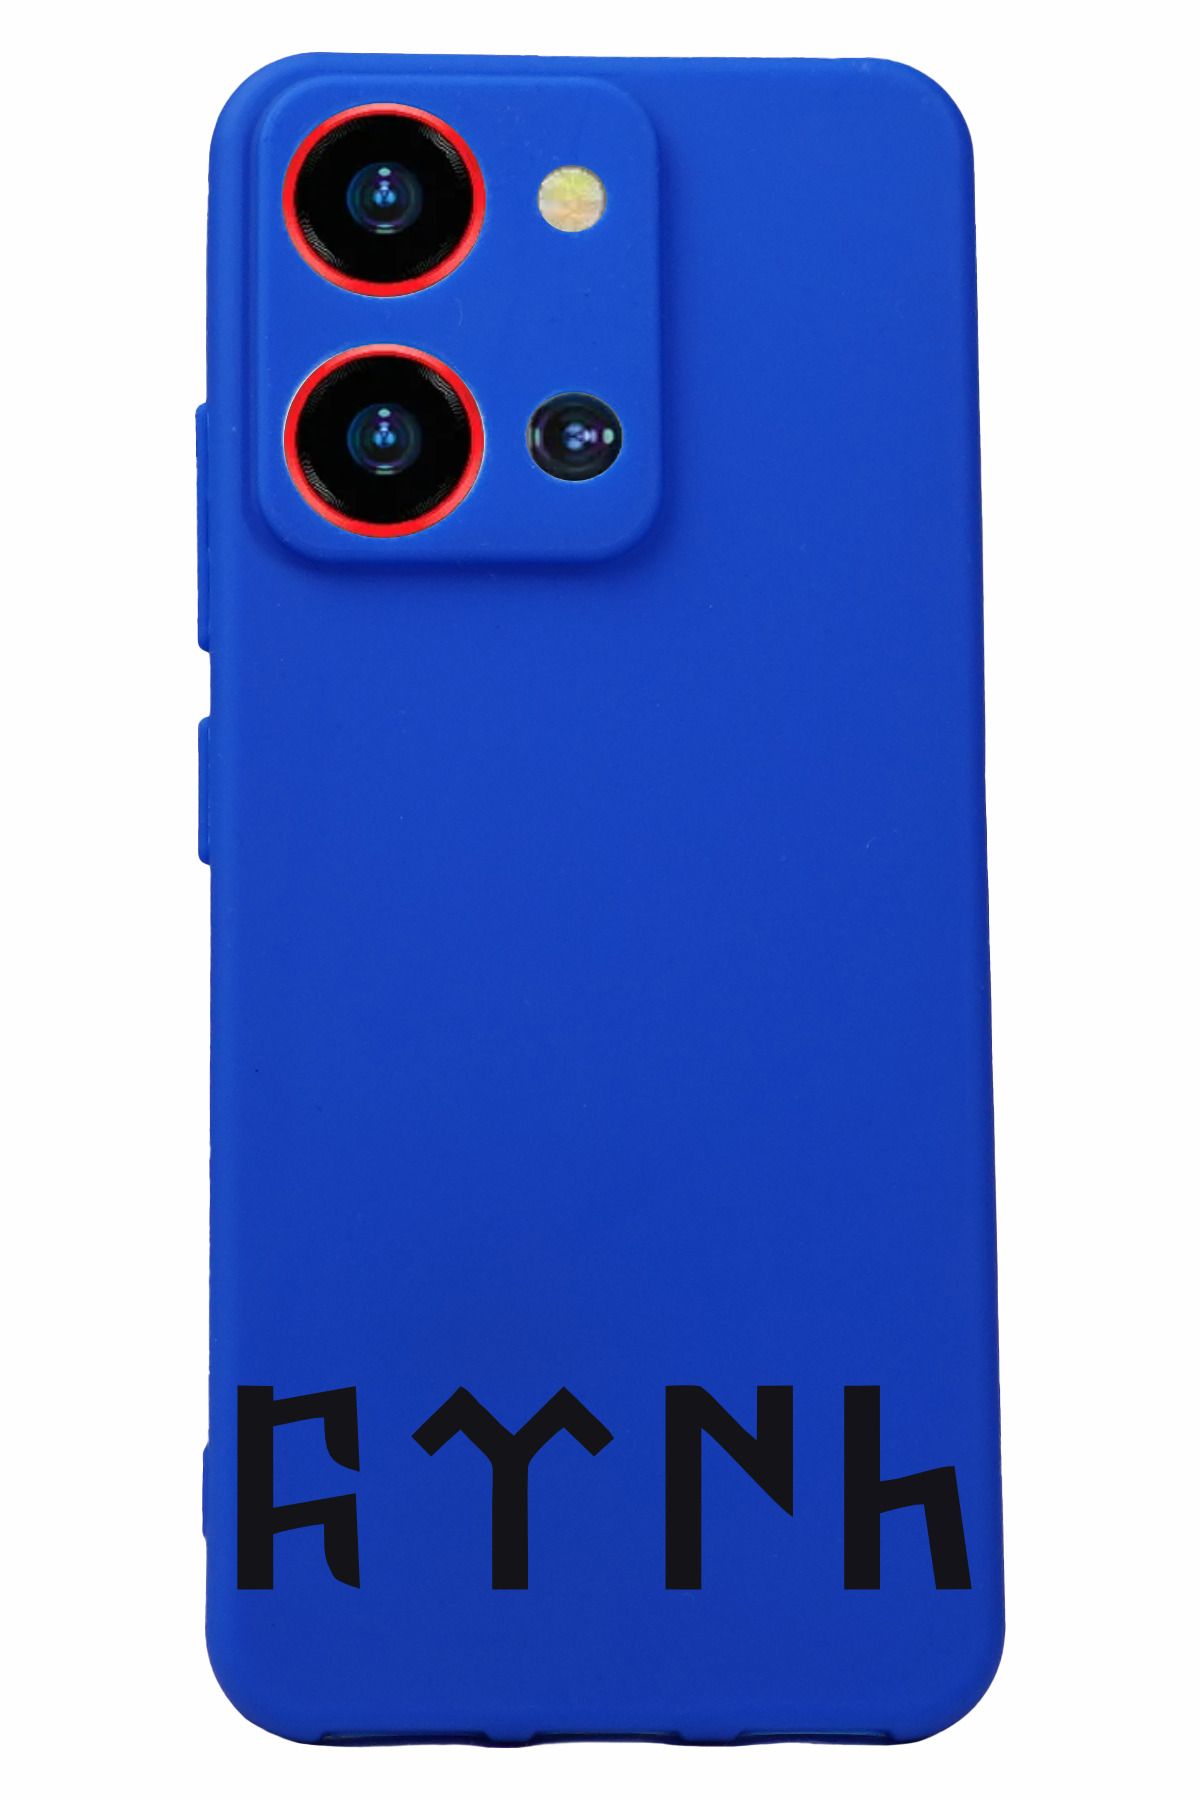 Reeder S19 Max Pro S Zoom Uyumlu Kamera Korumalı ve Tasarımlı Mavi Renk Silikon Kılıf